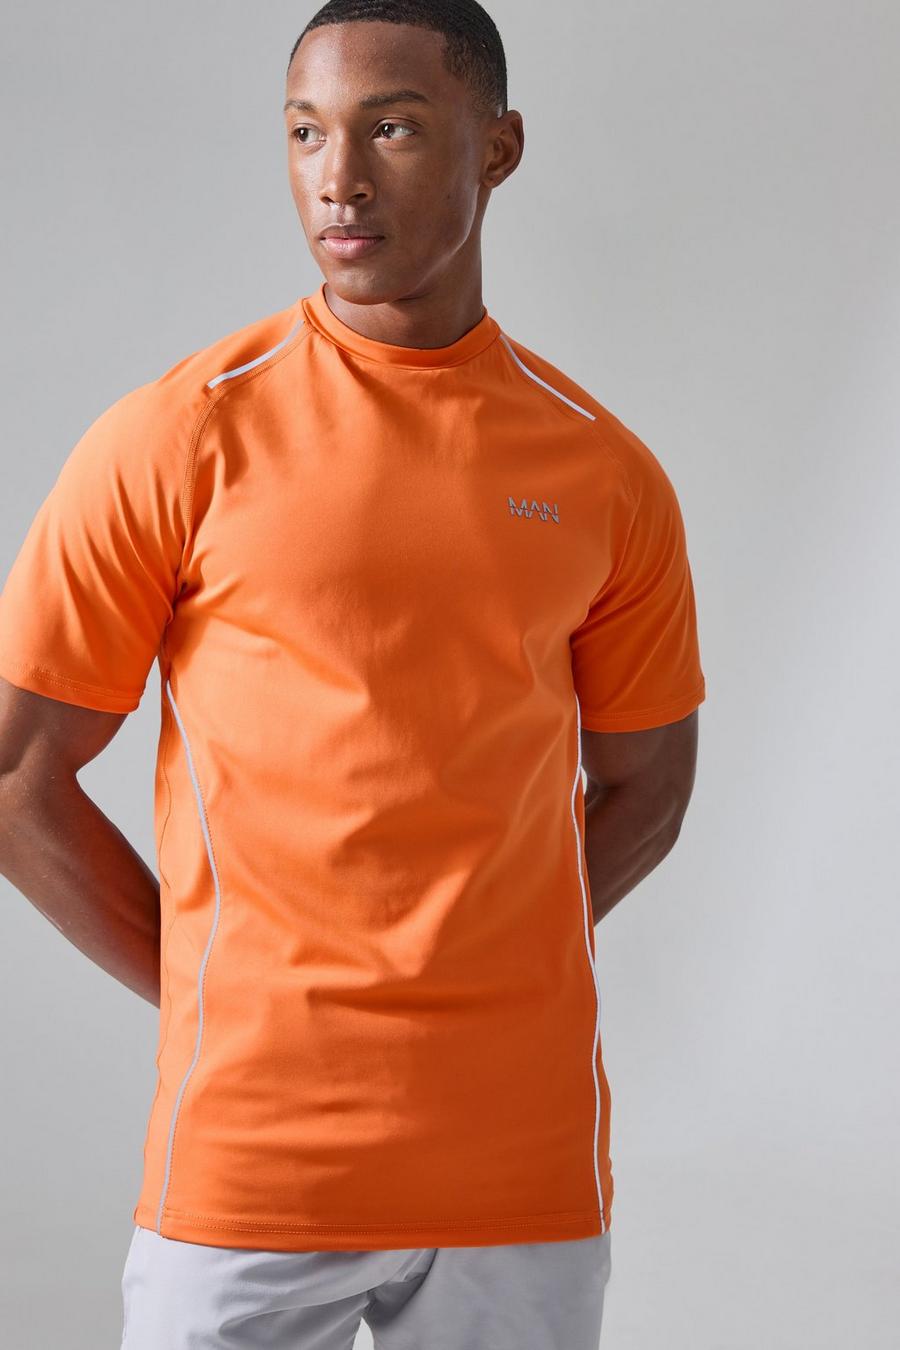 Man Active Muscle-Fit T-Shirt, Orange